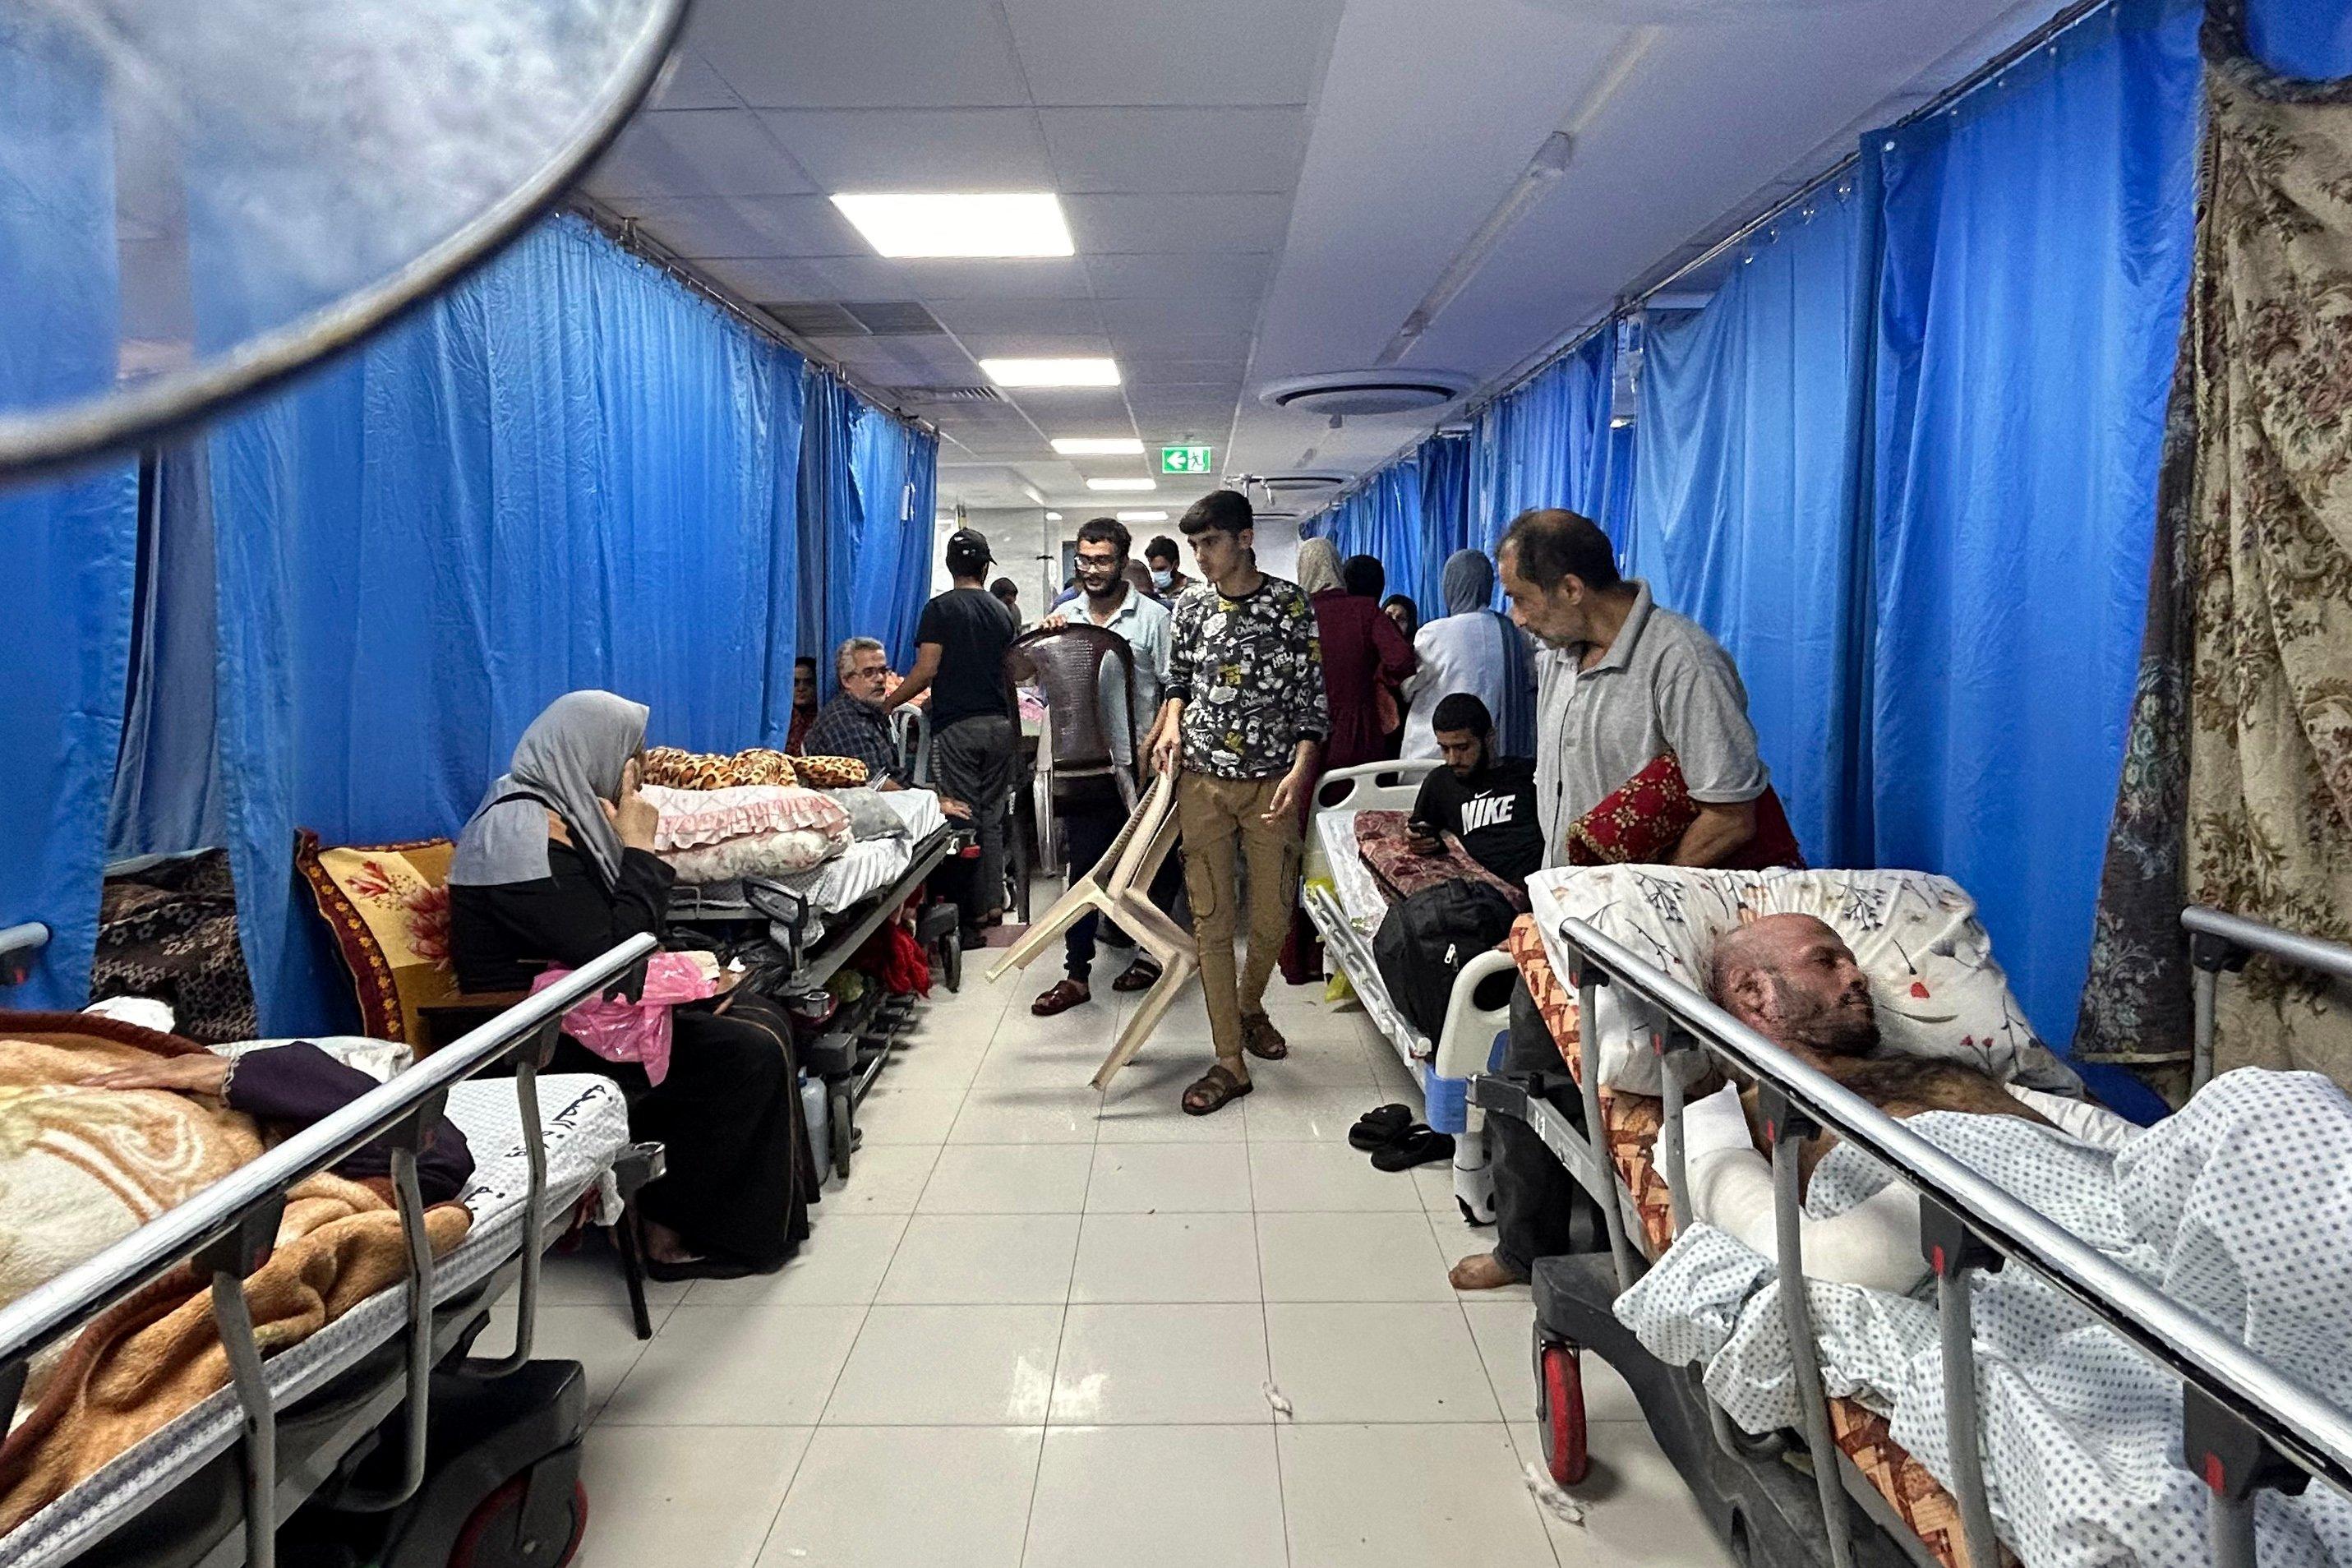 szpitalny korytarz pełen łóżek i ludzi